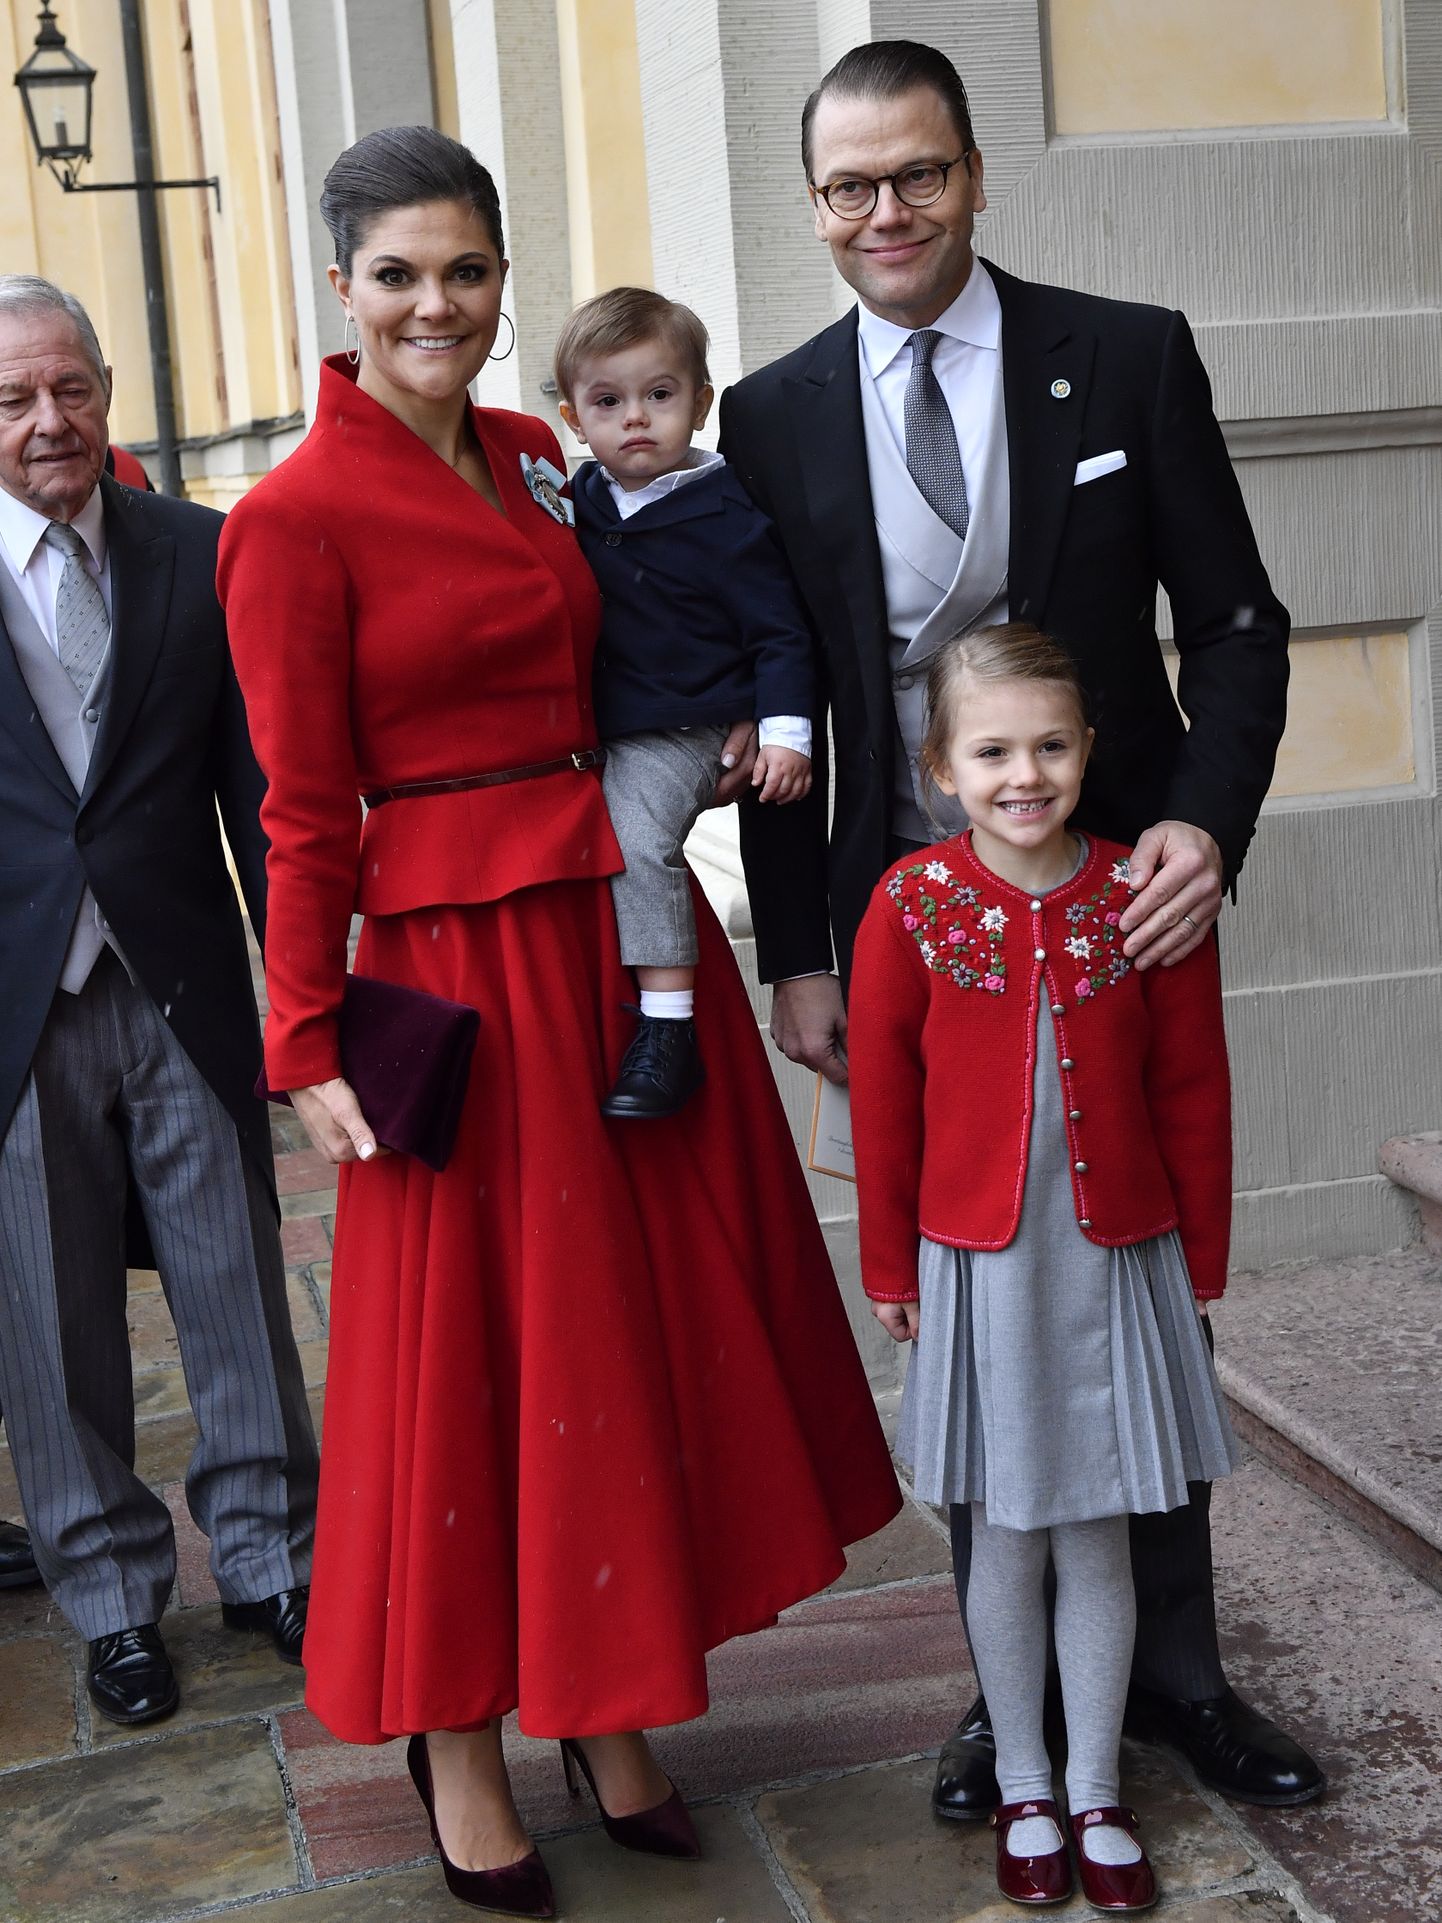 Rootsi kroonprintsess Victoria, ta süles prints Oscar, prints Daniel ja ees printsess Estelle